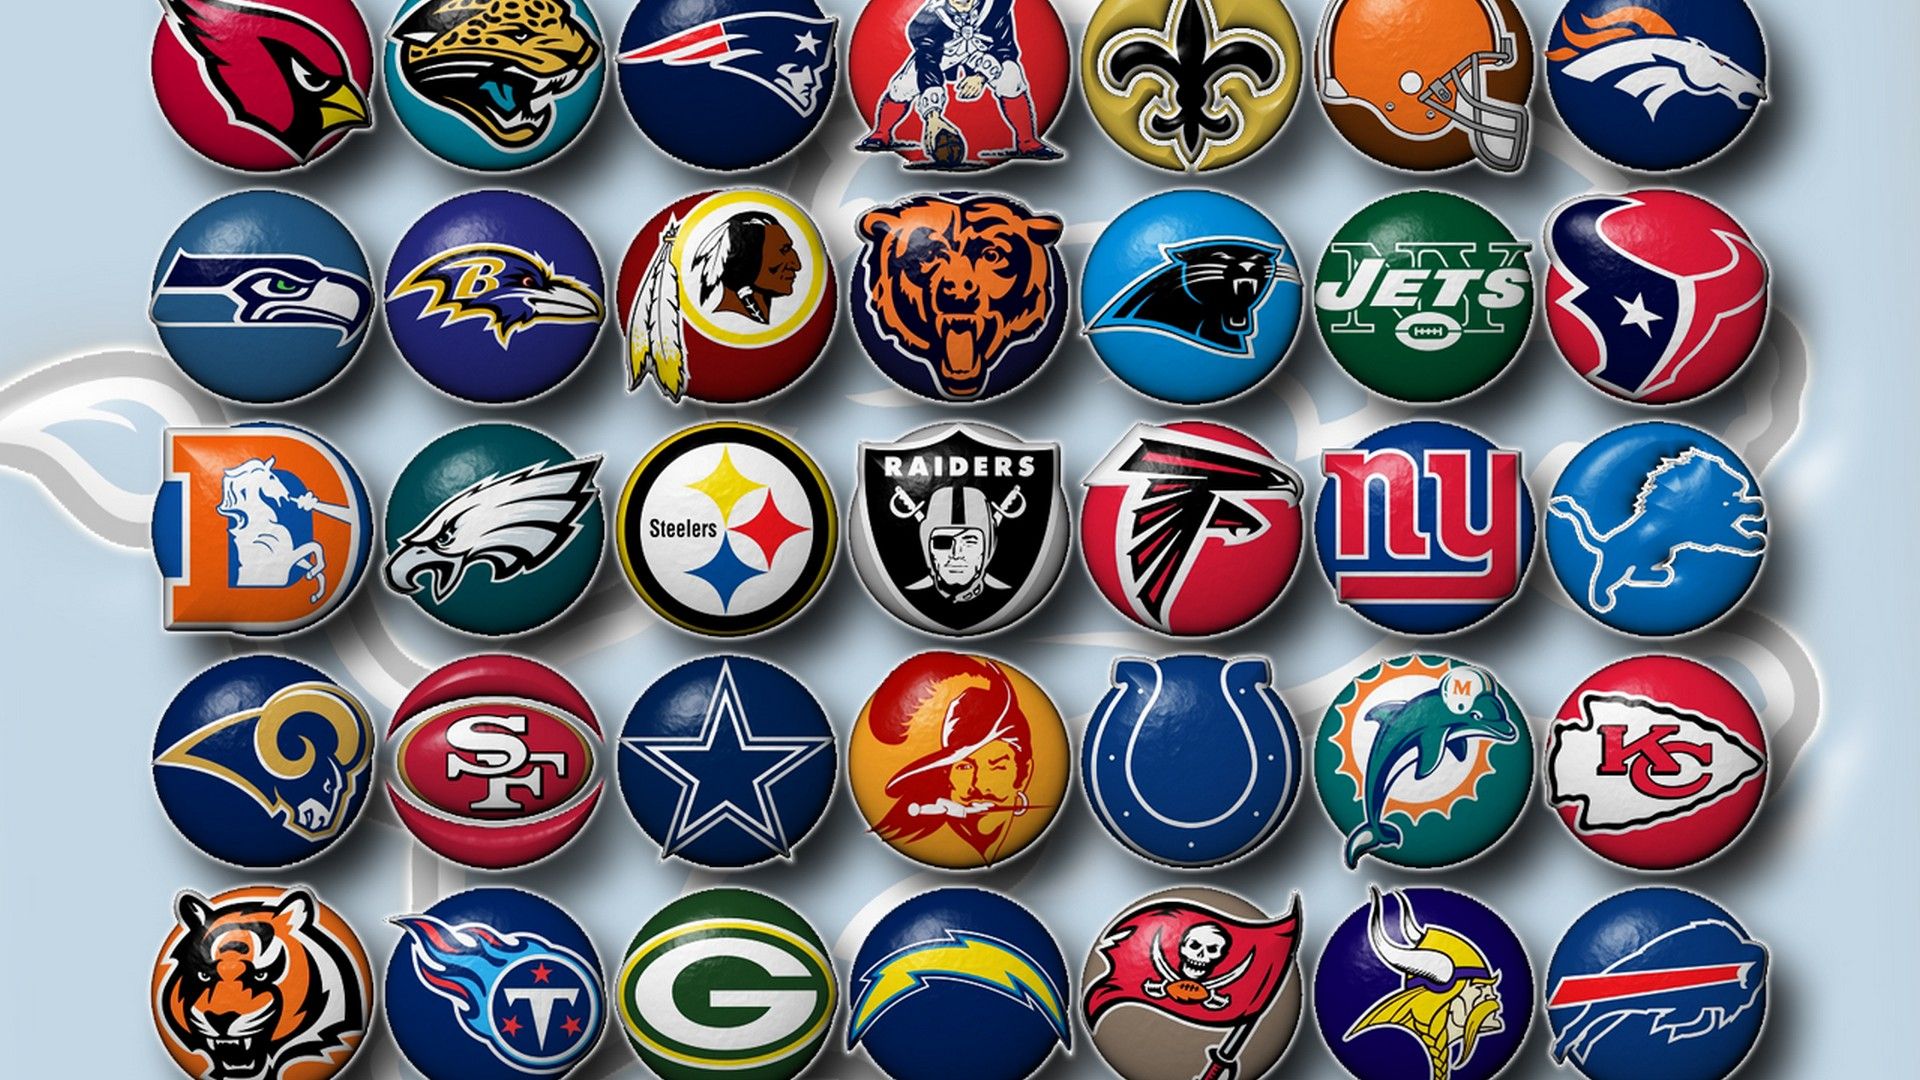 NFL For PC Wallpaper NFL Football Wallpaper. Nfl teams logos, List of nfl teams, Nfl football teams